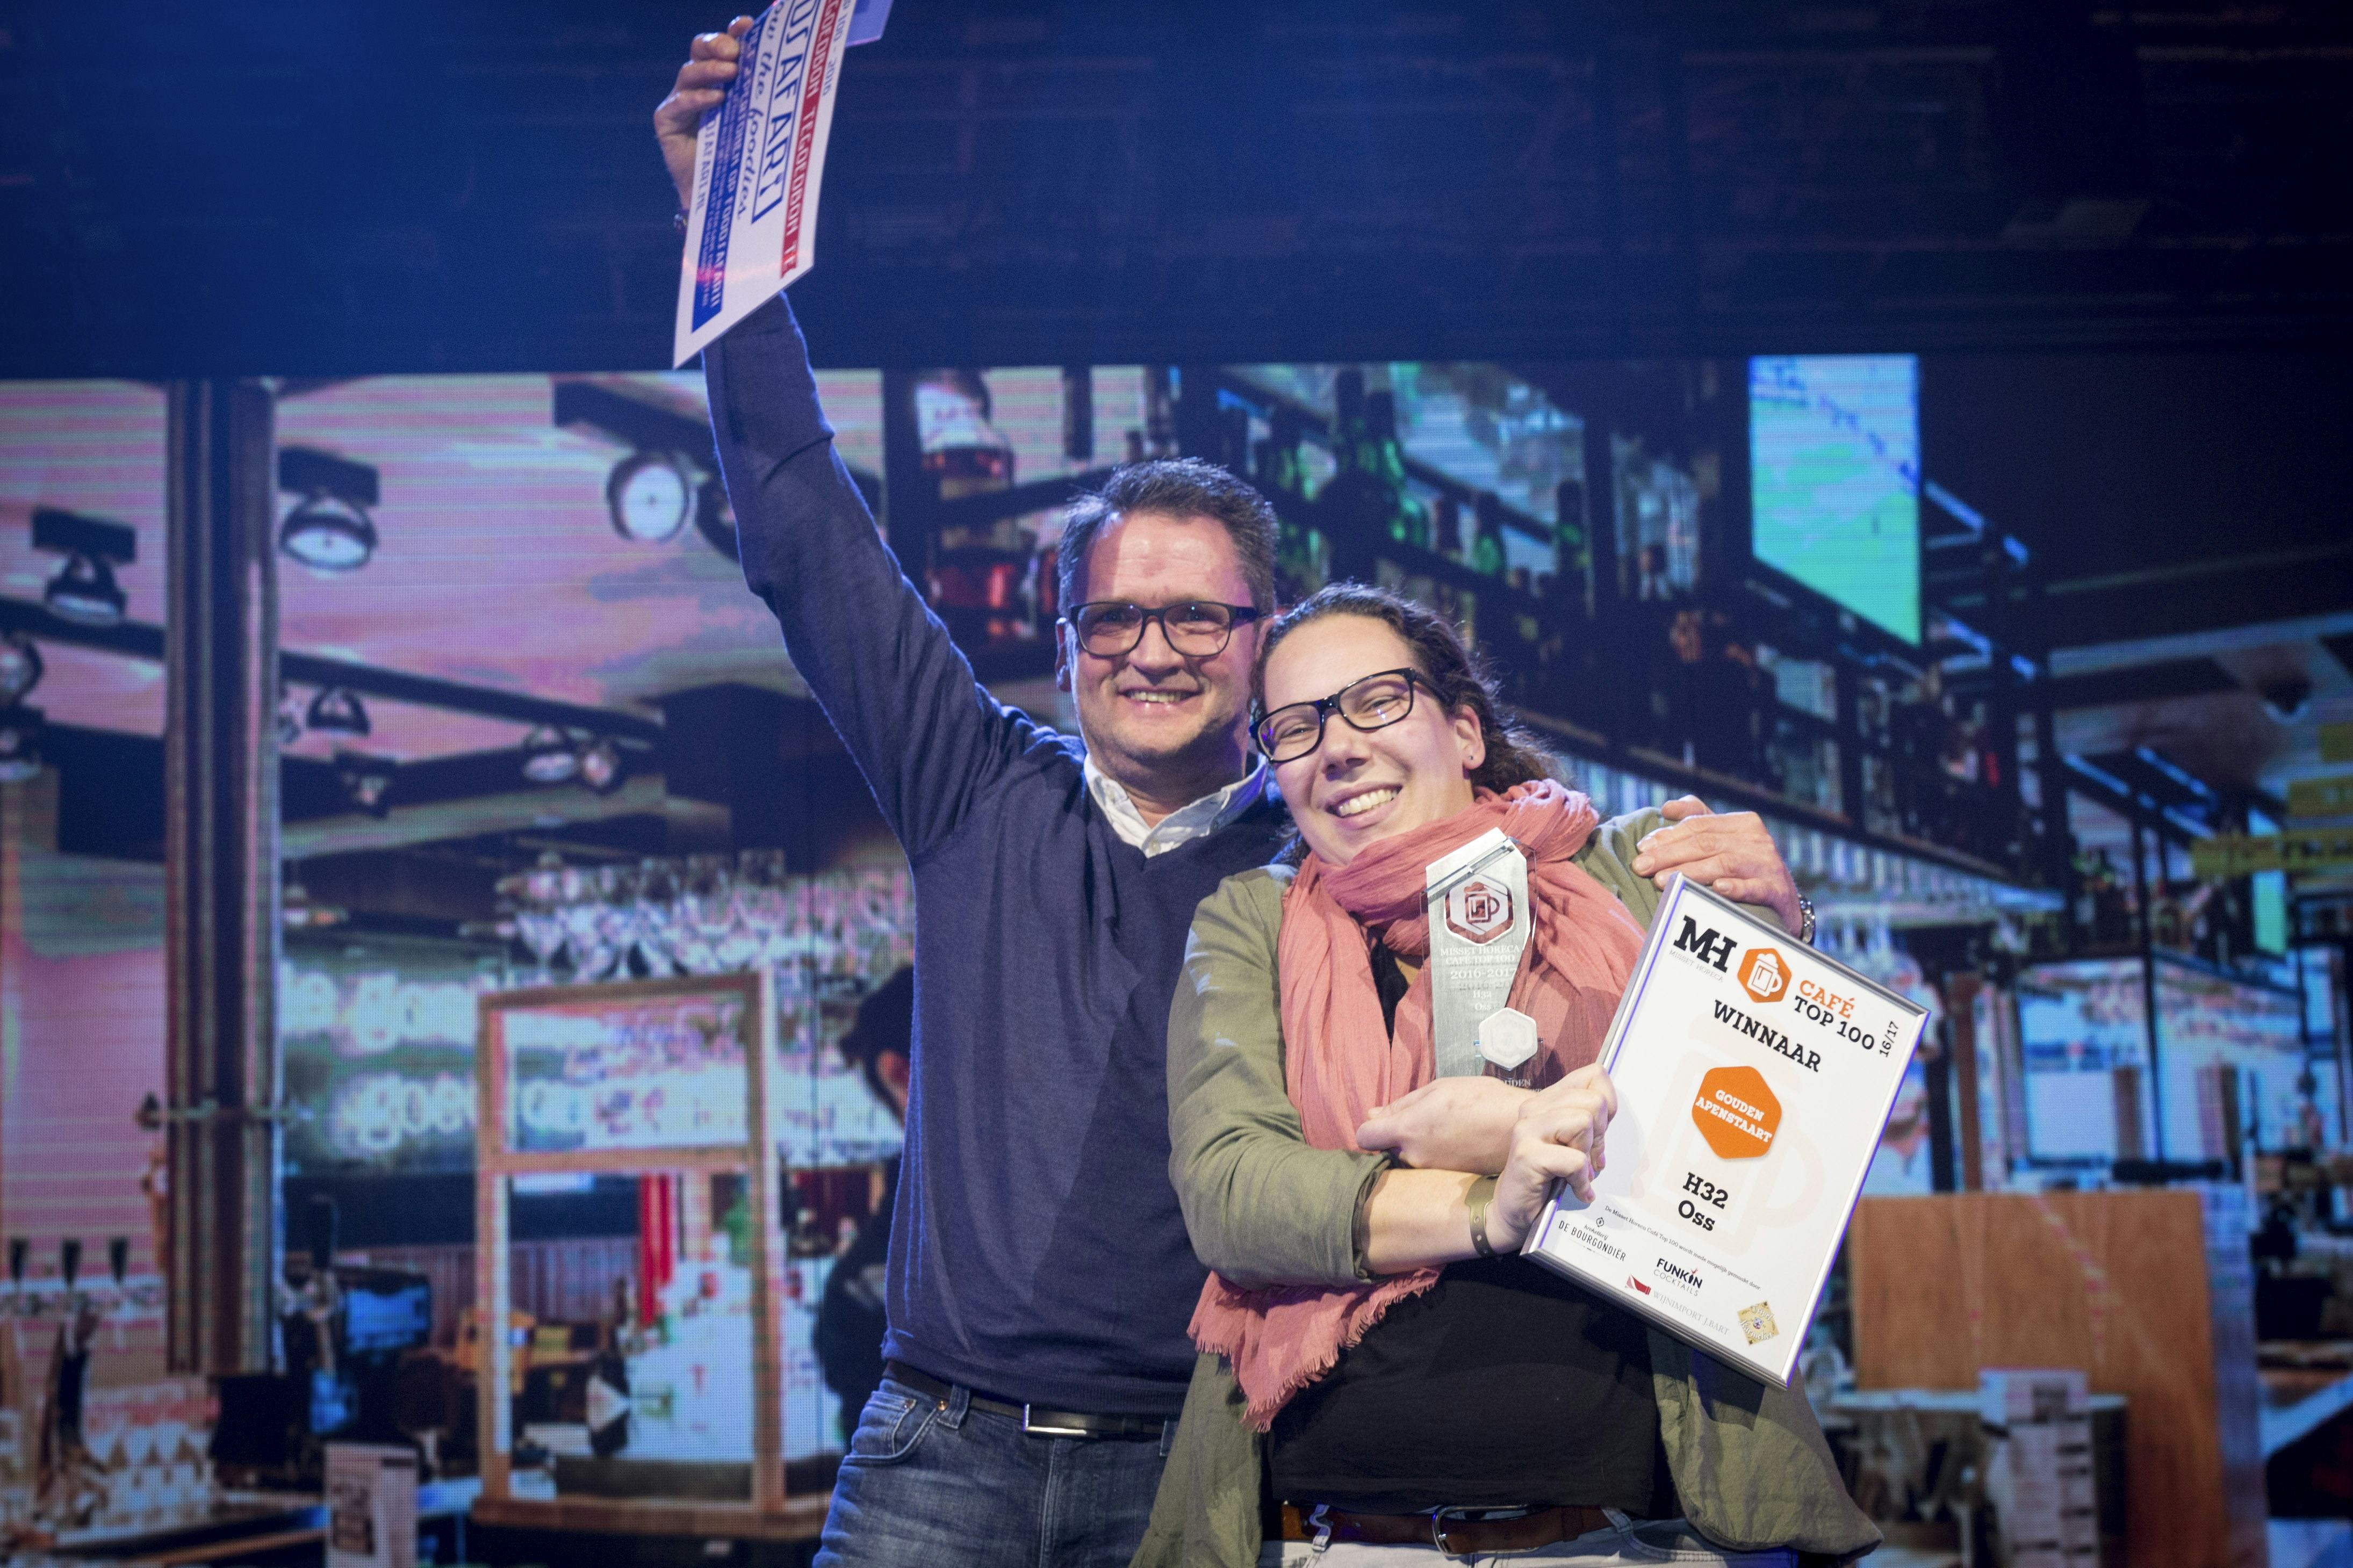 De winnaars van de Gouden Apenstaart 2016: Pierre Vink en Marieke van Druenen. Foto: Koos Groenewold.